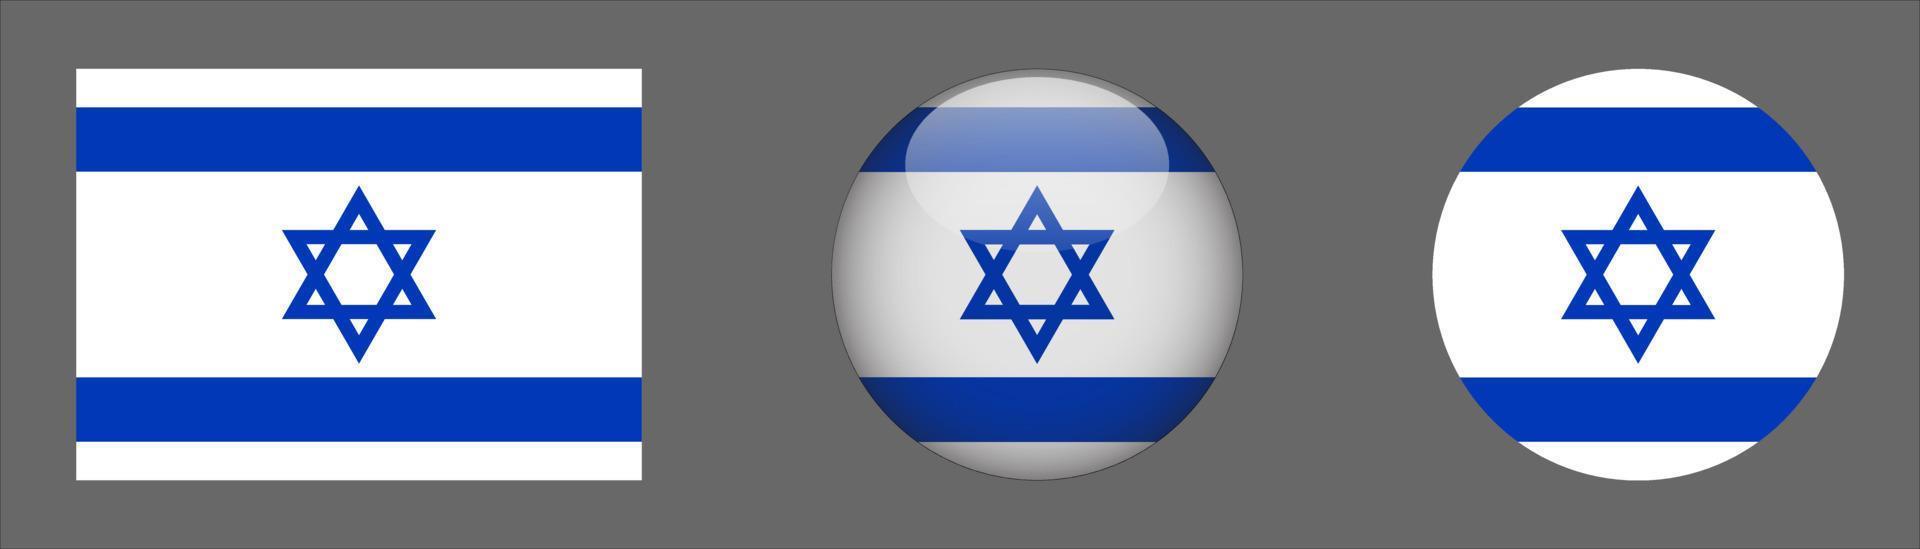 coleção do conjunto da bandeira de israel, proporção do tamanho original, 3D arredondado e plano arredondado vetor